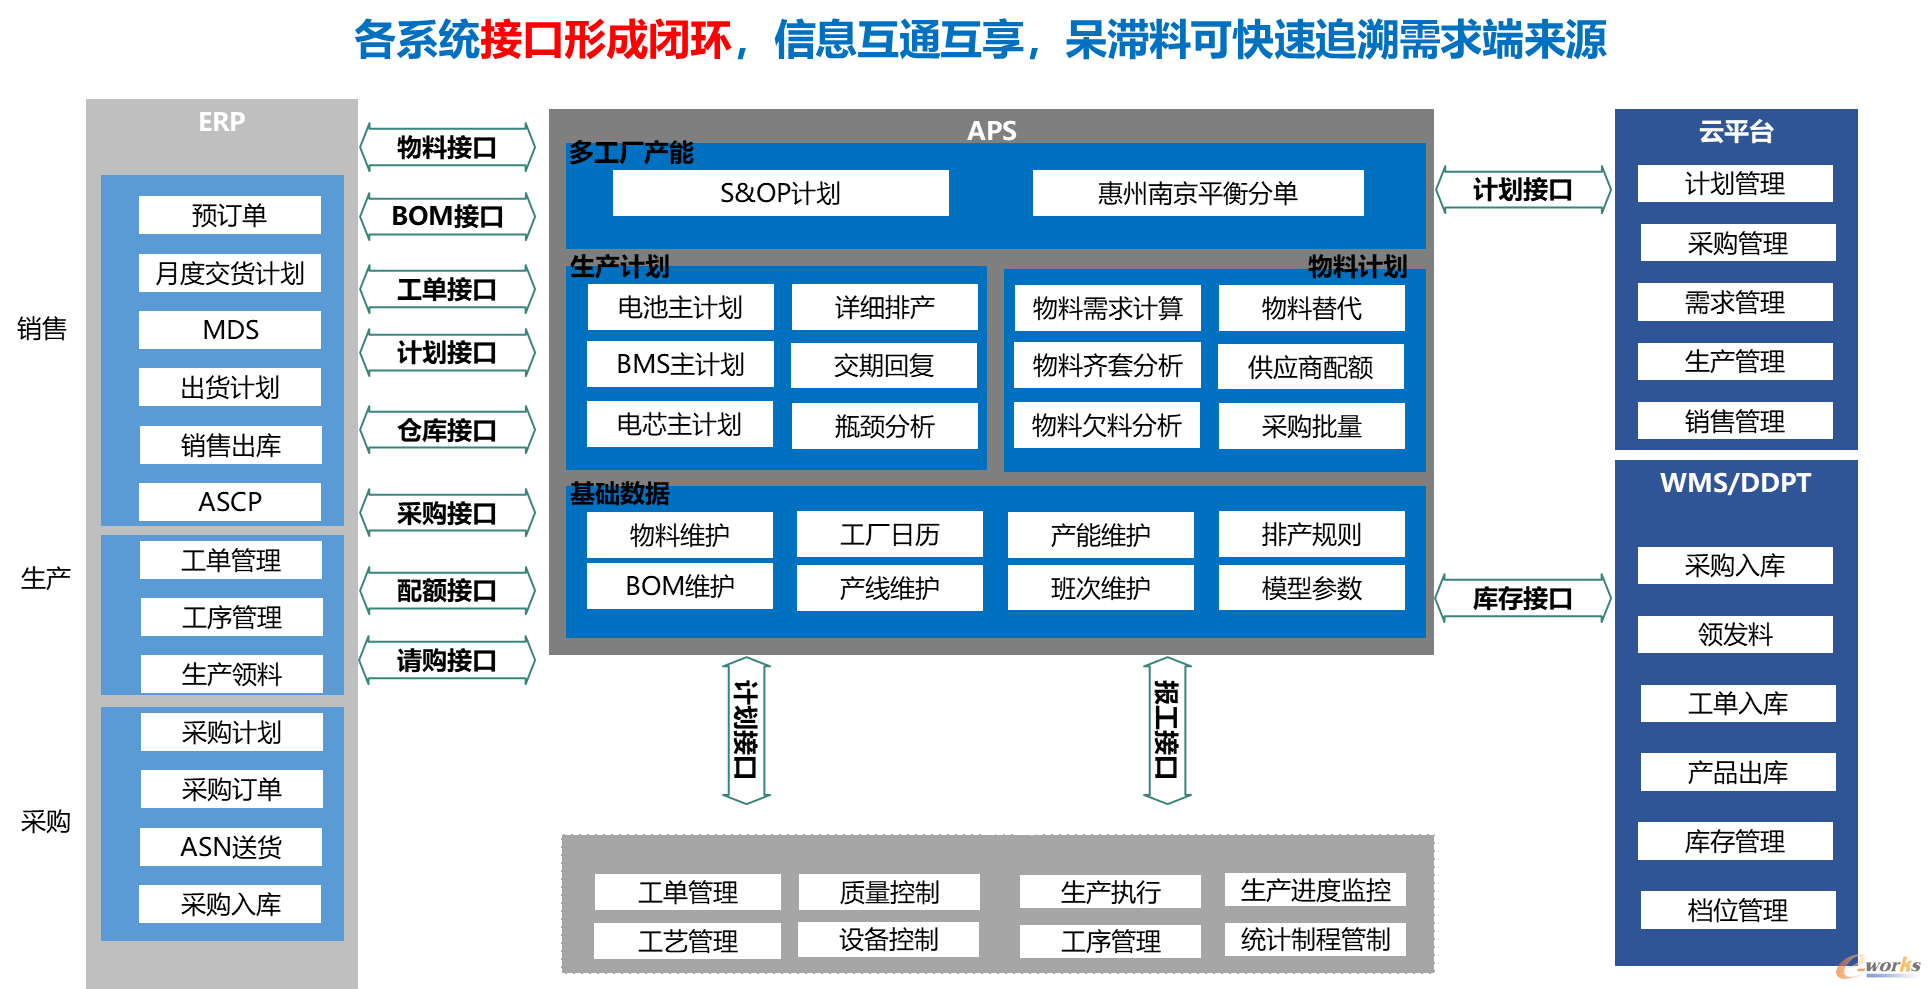 欣旺达:引入排产易aps系统搭建集成供应链数字化体系_scm及物流_管理